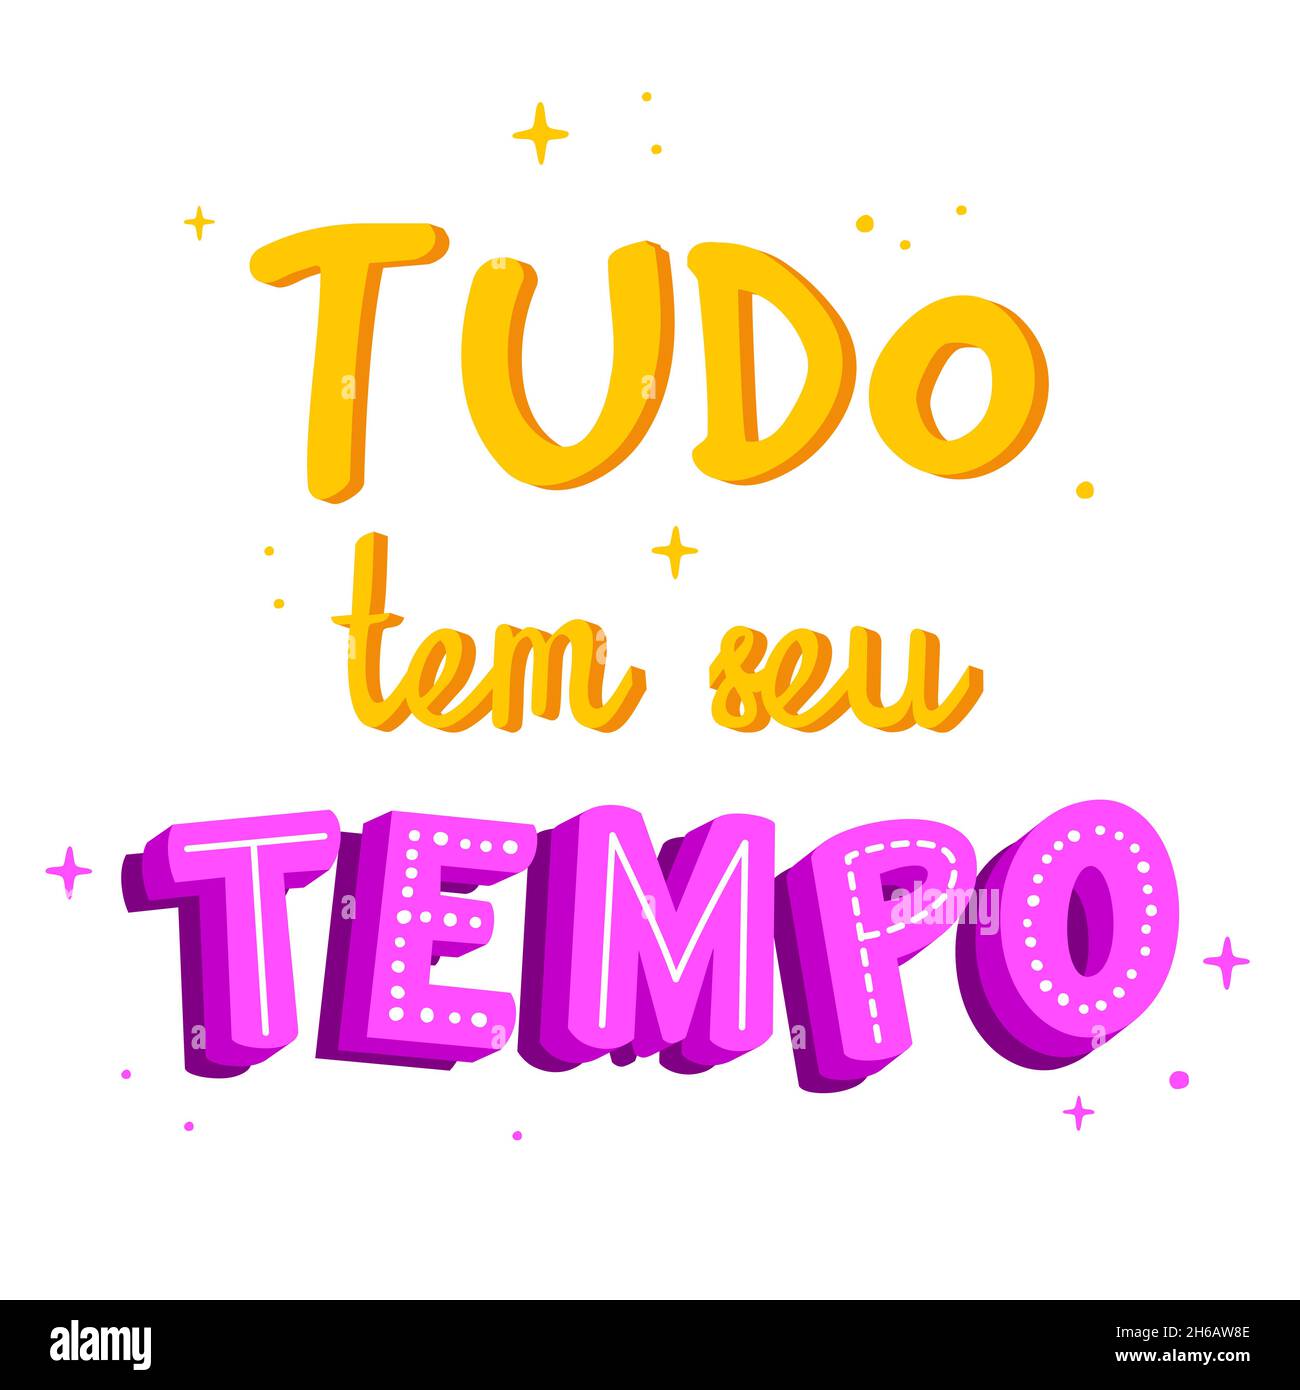 Citation du portugais brésilien motivationnel.Traduction : « tout a son temps » Illustration de Vecteur